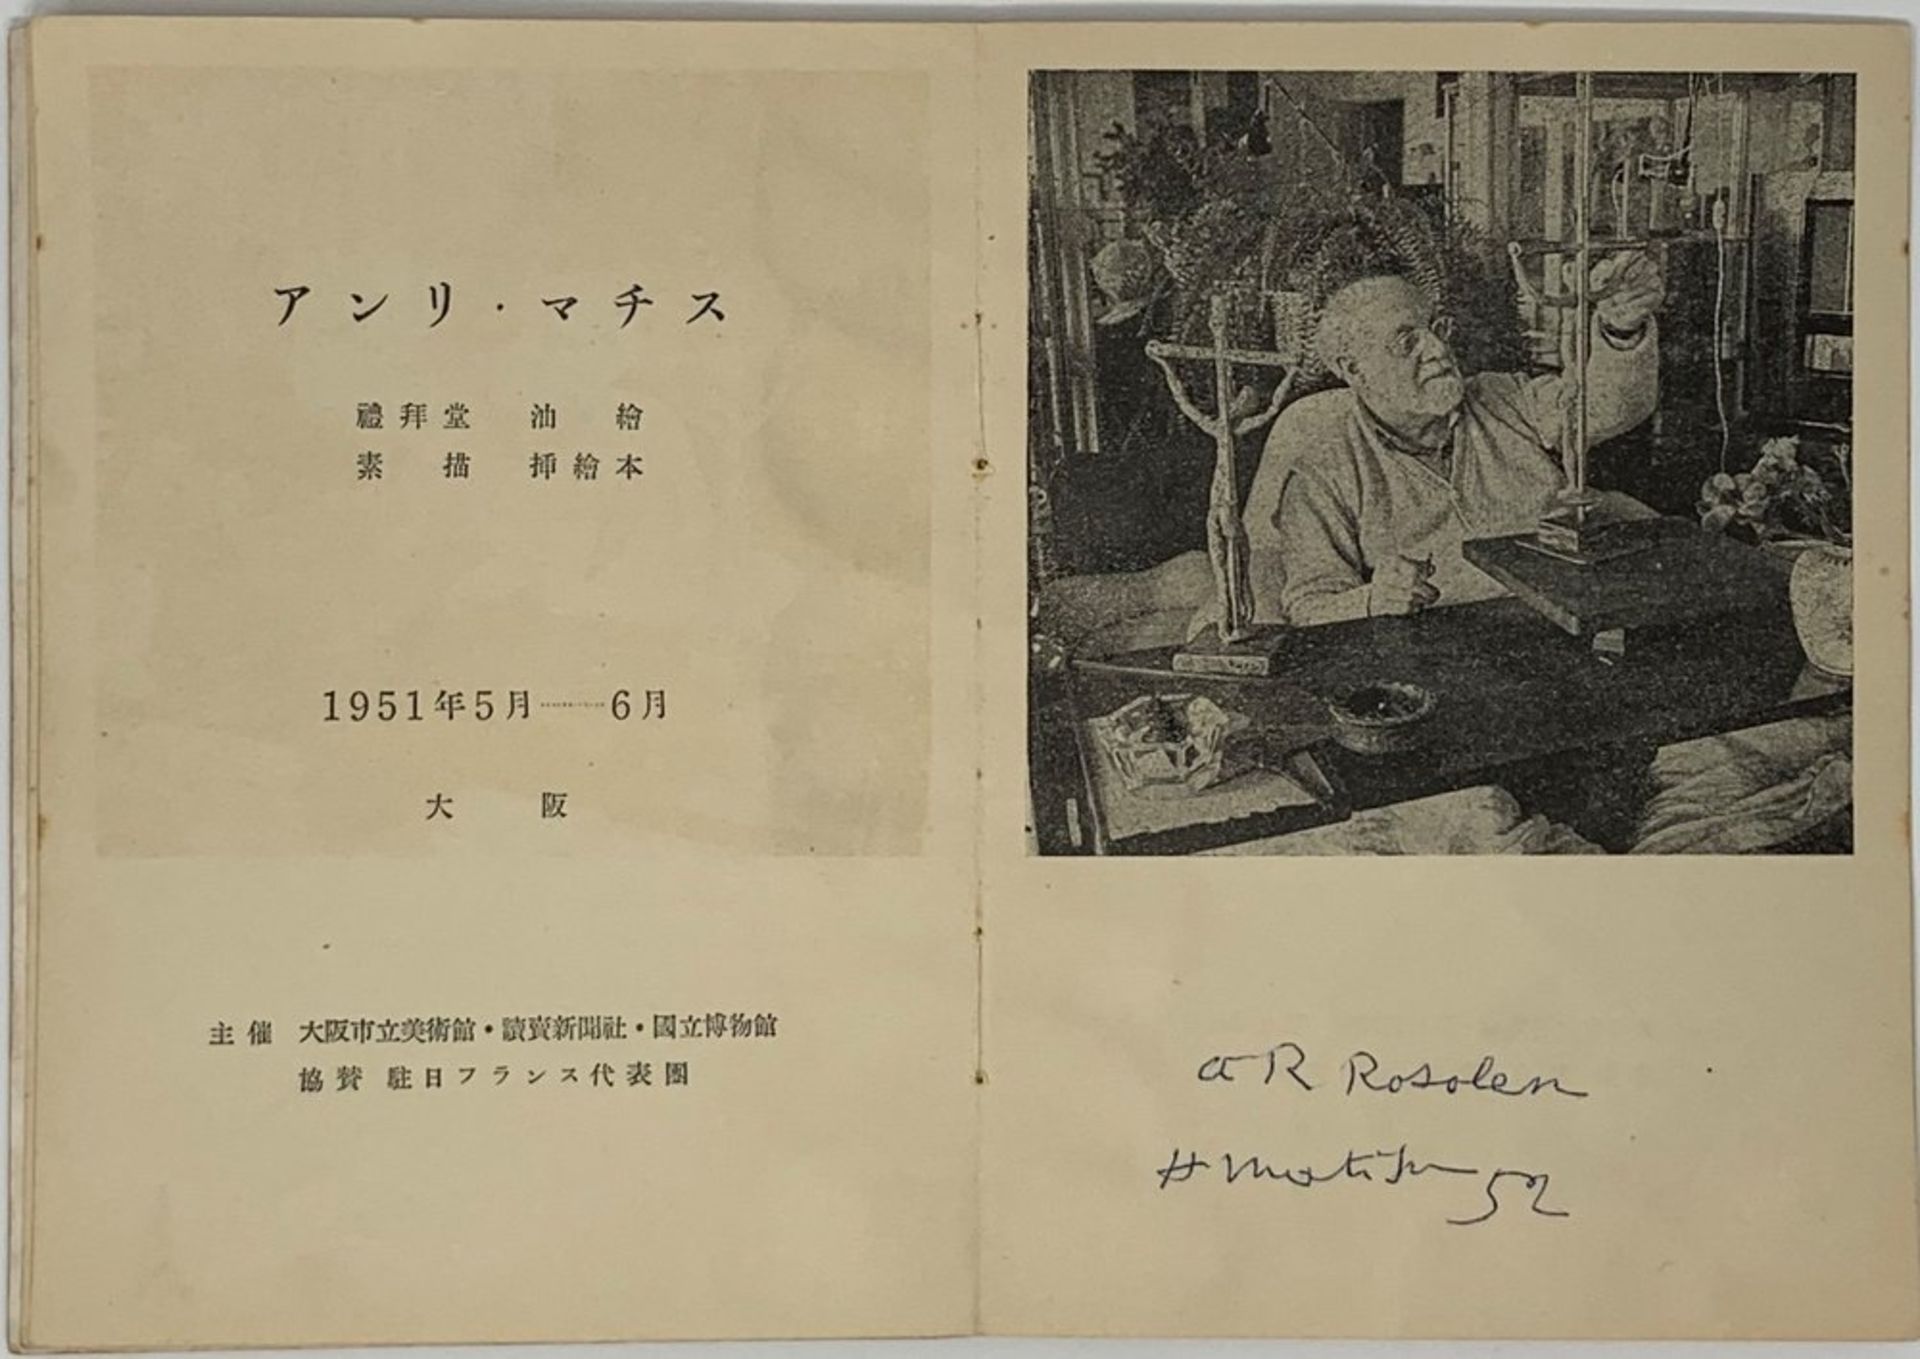 MATISSE HENRI. 1869-1954. Exhibition: [Booklet]. - Osaka 1951. - 59 p.; ill. in [...] - Bild 2 aus 4